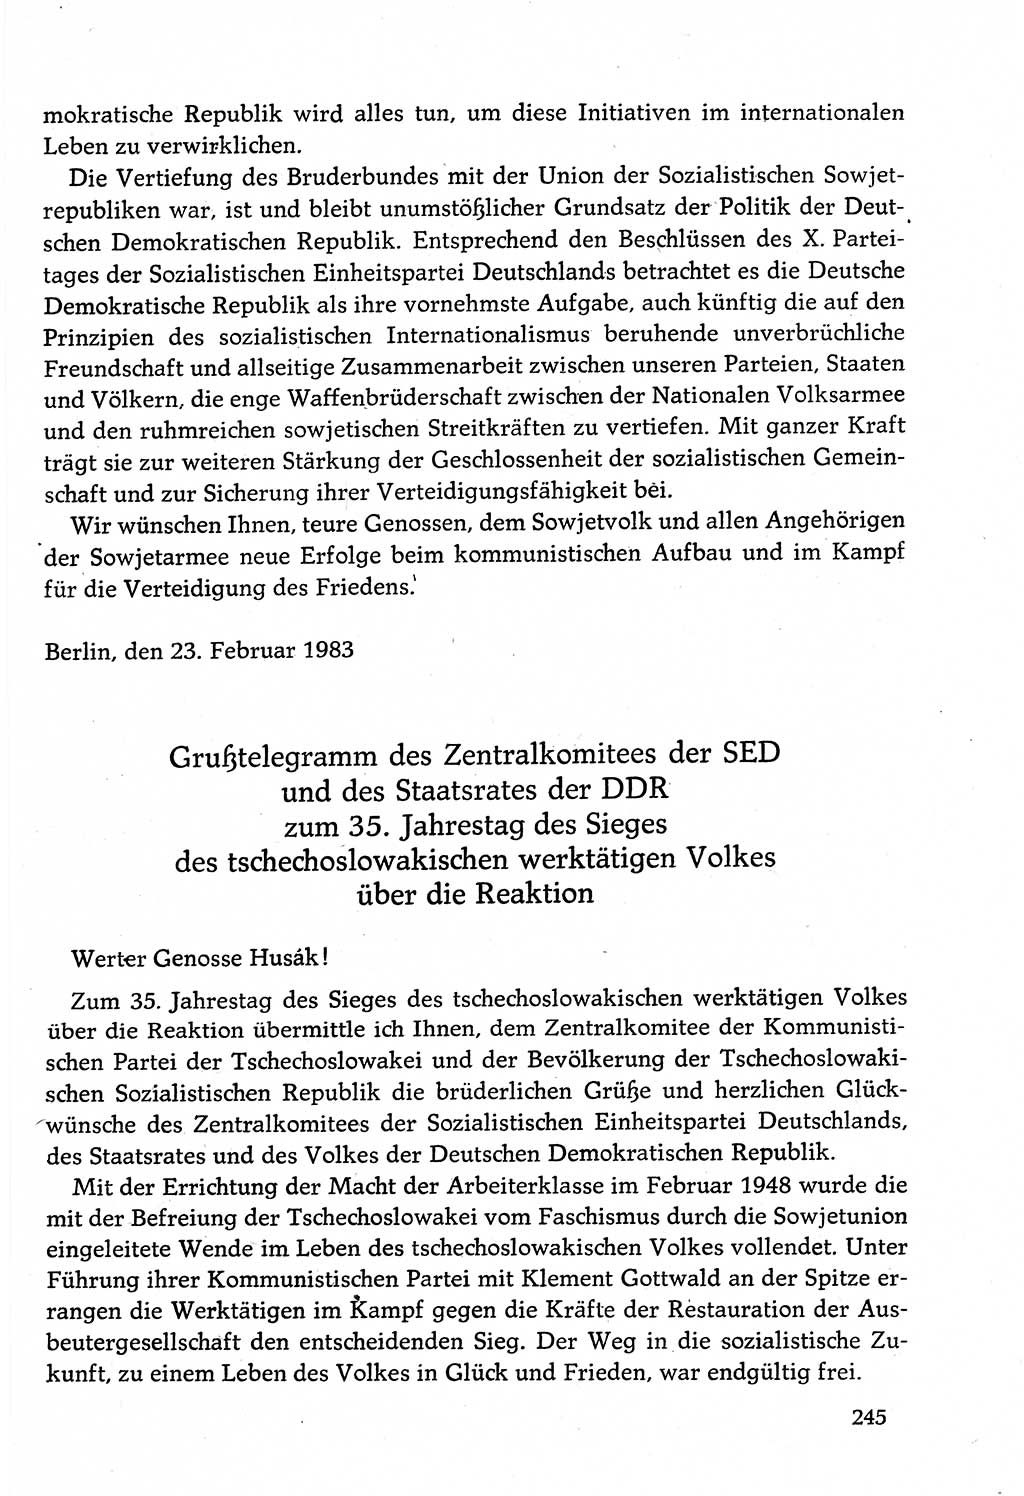 Dokumente der Sozialistischen Einheitspartei Deutschlands (SED) [Deutsche Demokratische Republik (DDR)] 1982-1983, Seite 245 (Dok. SED DDR 1982-1983, S. 245)